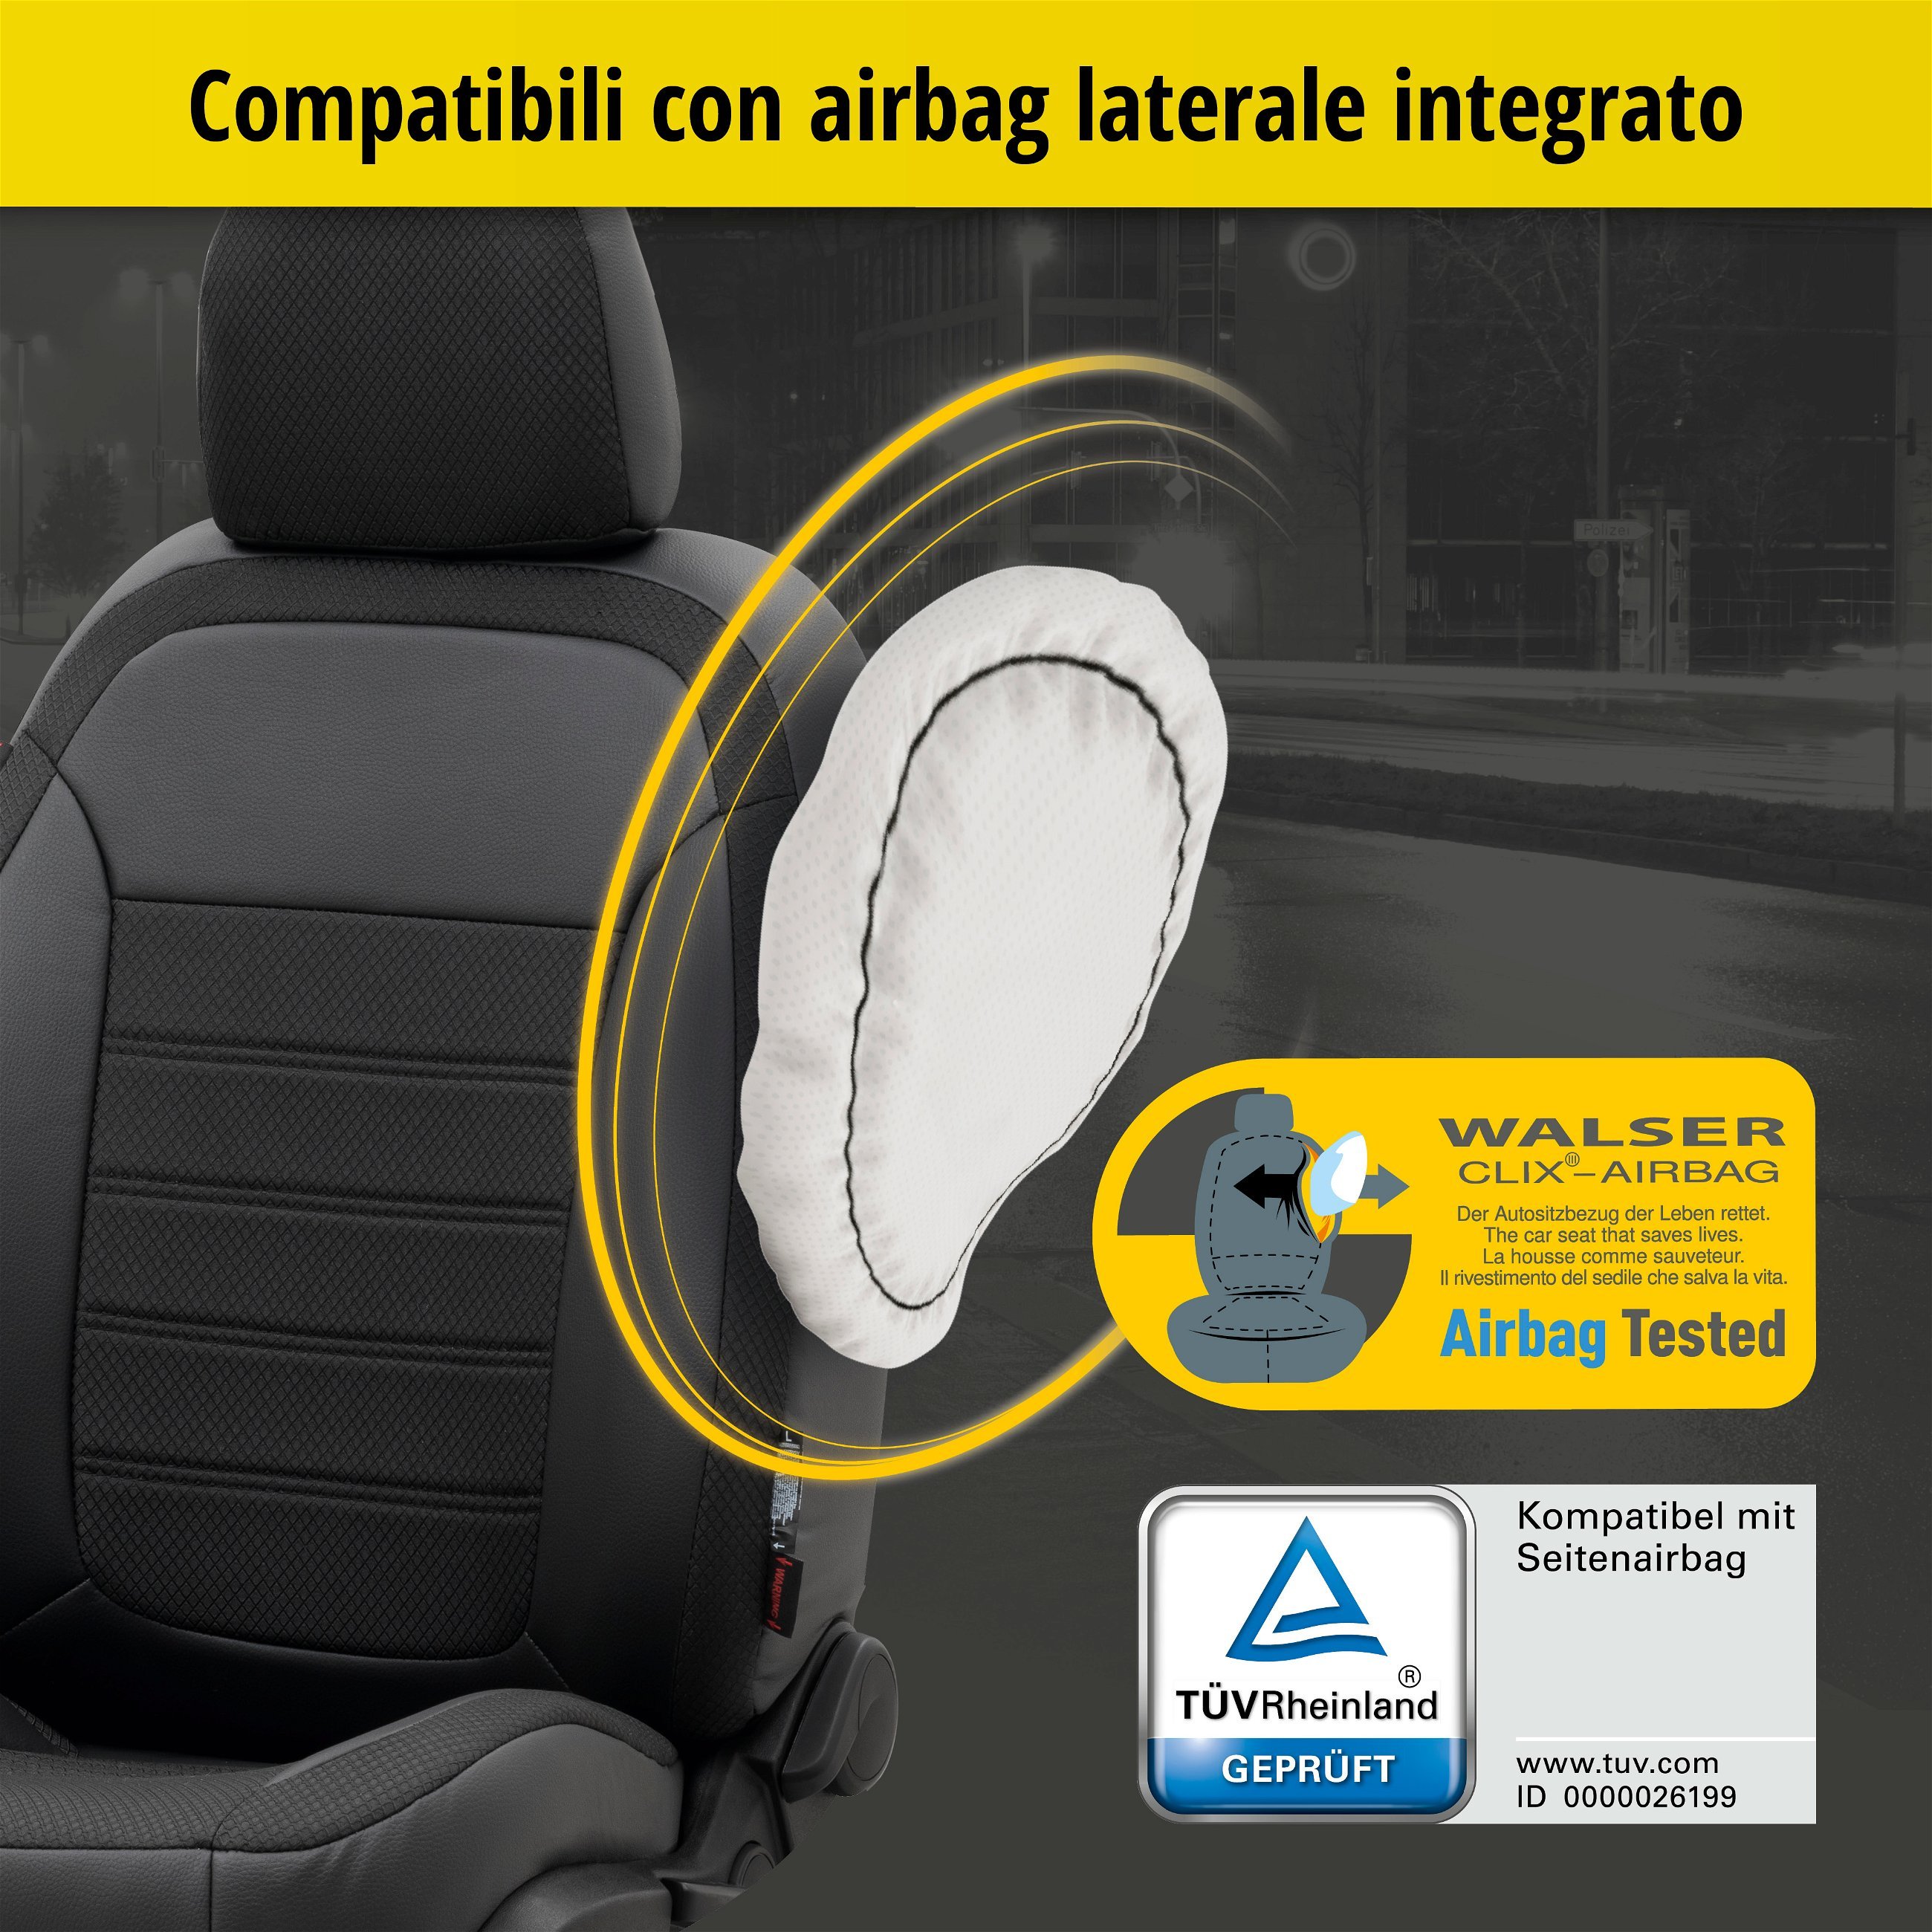 Coprisedili Aversa per Skoda Octavia III Combi (5E5) 11/2012-Oggi, 2 coprisedili per sedili normali